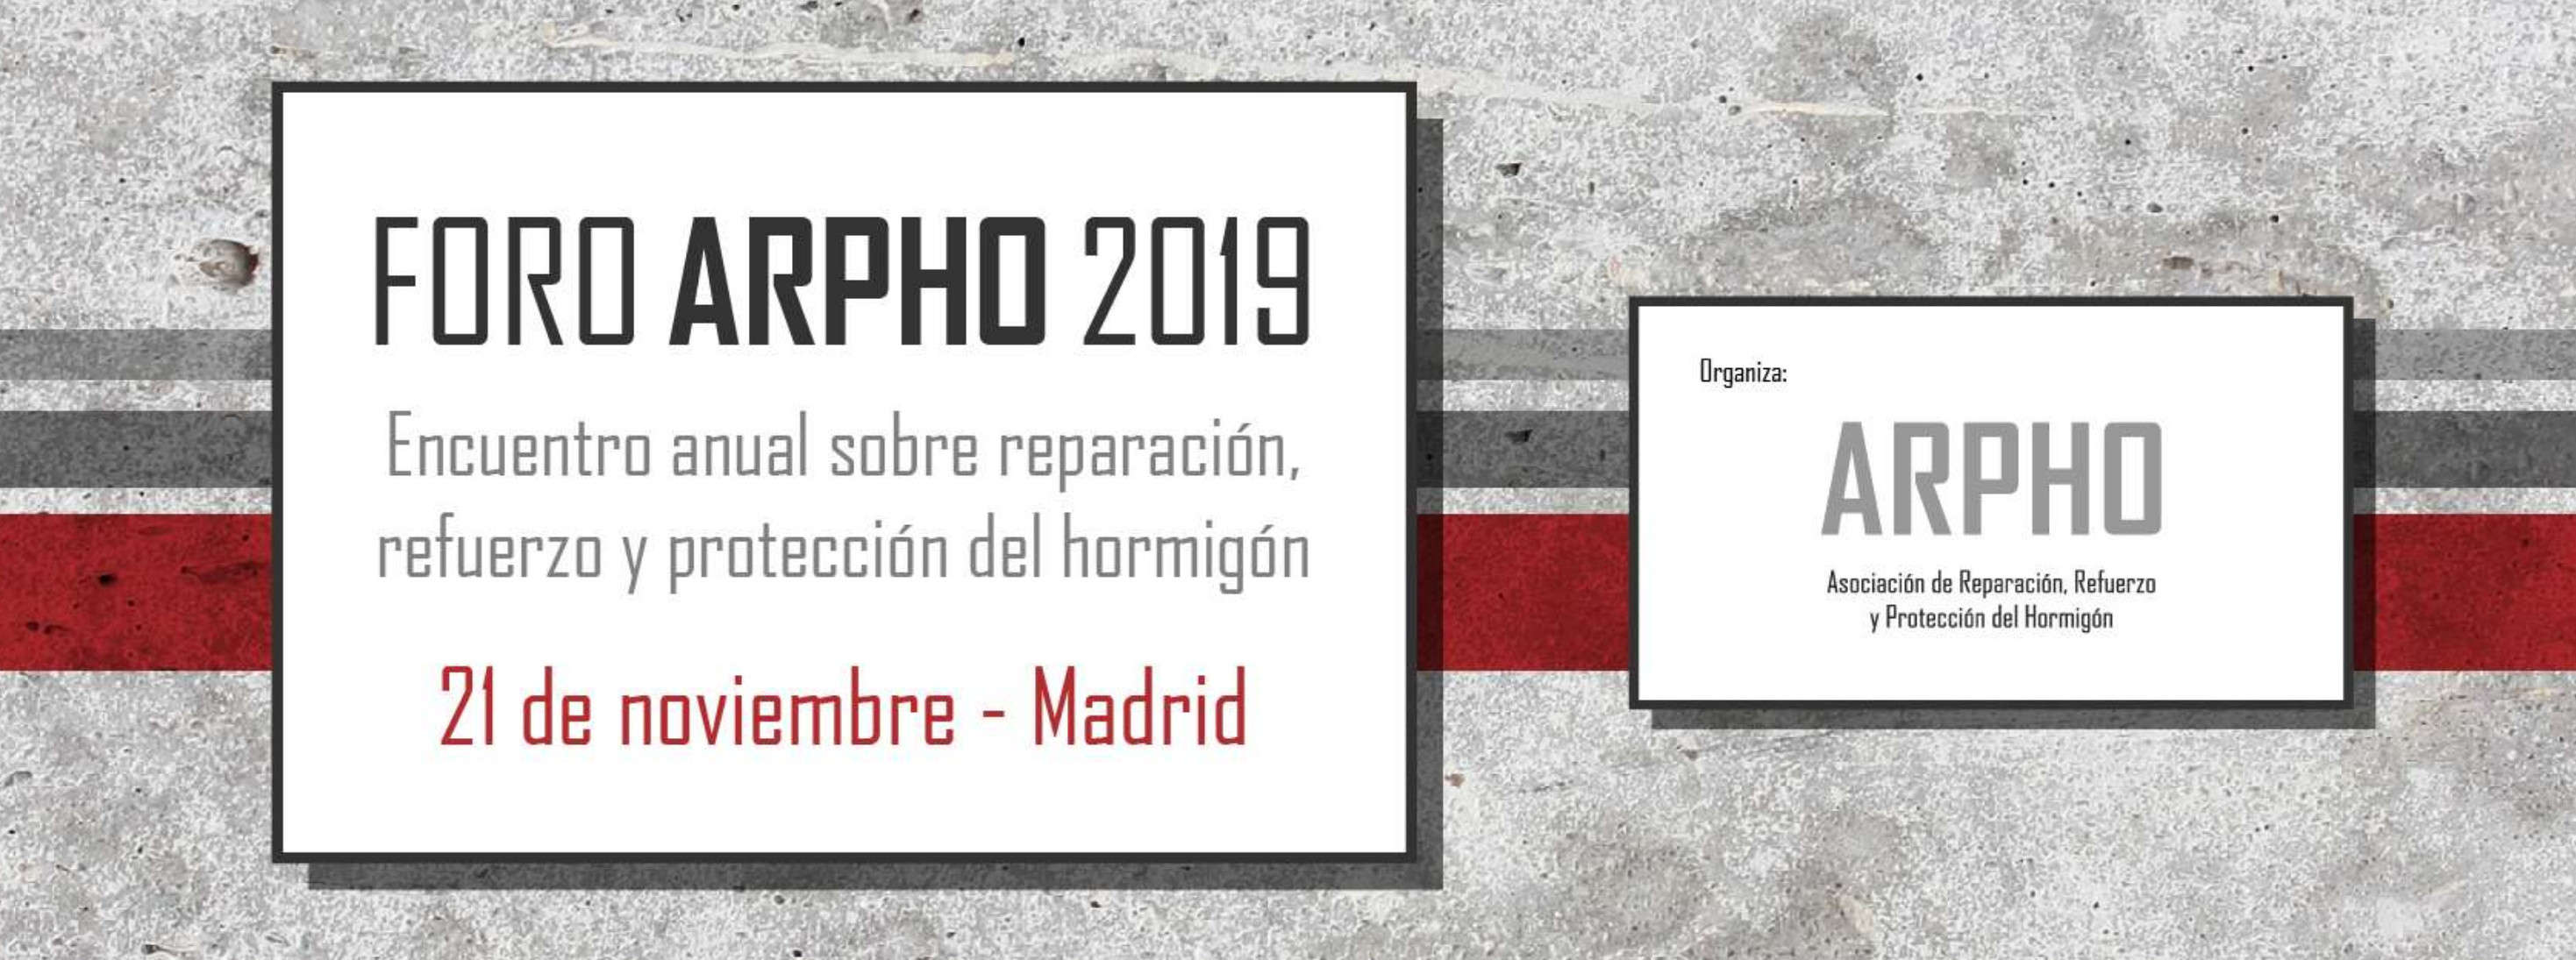 HCC participó de manera activa en el FORO ARPHO 2019 celebrado el 21 de noviembre en el Instituto Torroja (Madrid)